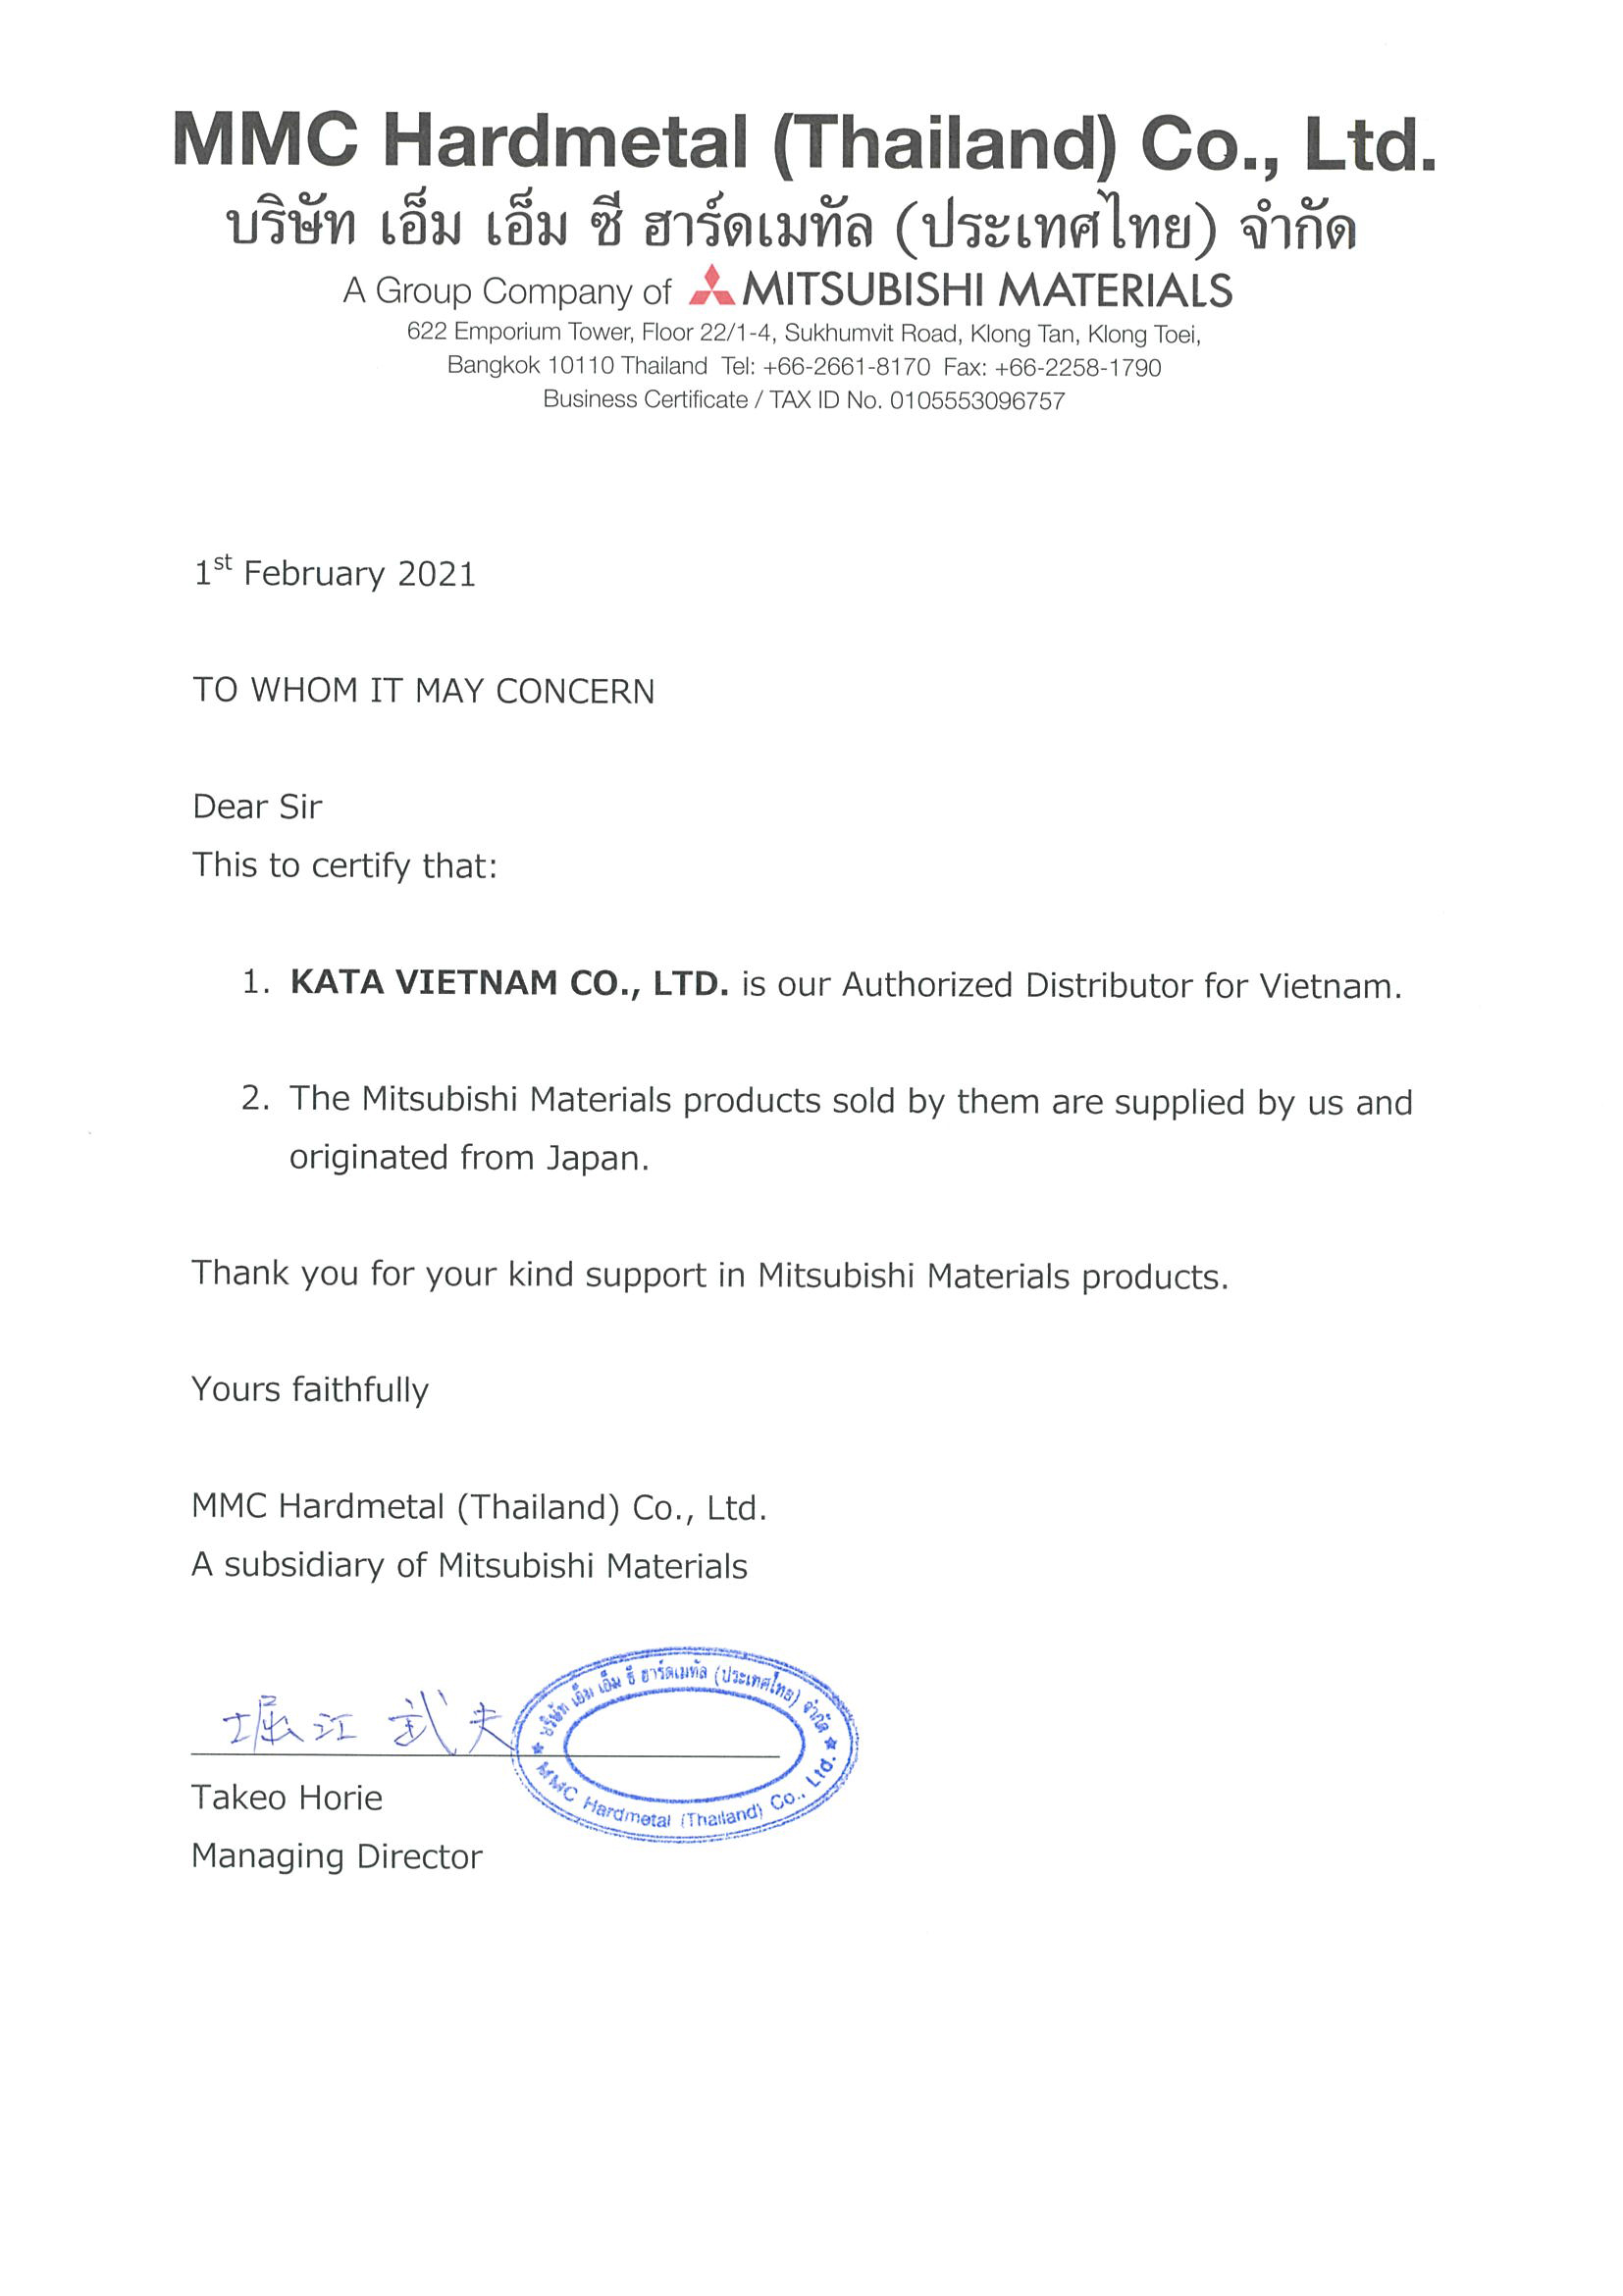 Công ty TNHH Công Nghiệp Kata Việt Nam thông báo về việc trở thành đại lý chính thức các sản phẩm dụng cụ cắt gọt Mitsubishi tại Việt Nam